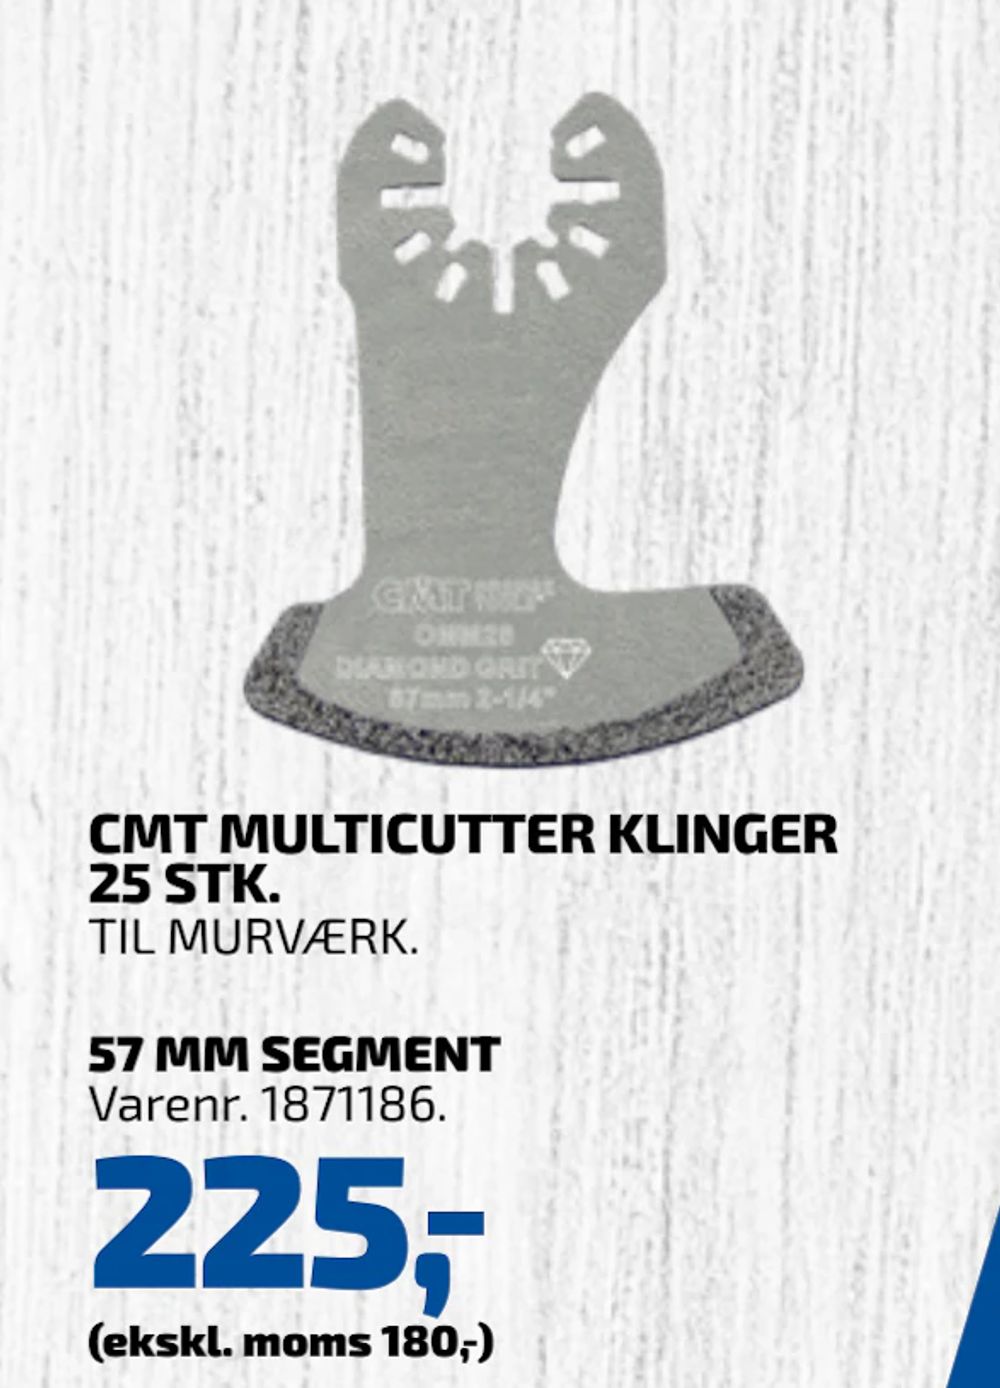 Tilbud på CMT MULTICUTTER KLINGER 25 STK fra Davidsen til 225 kr.